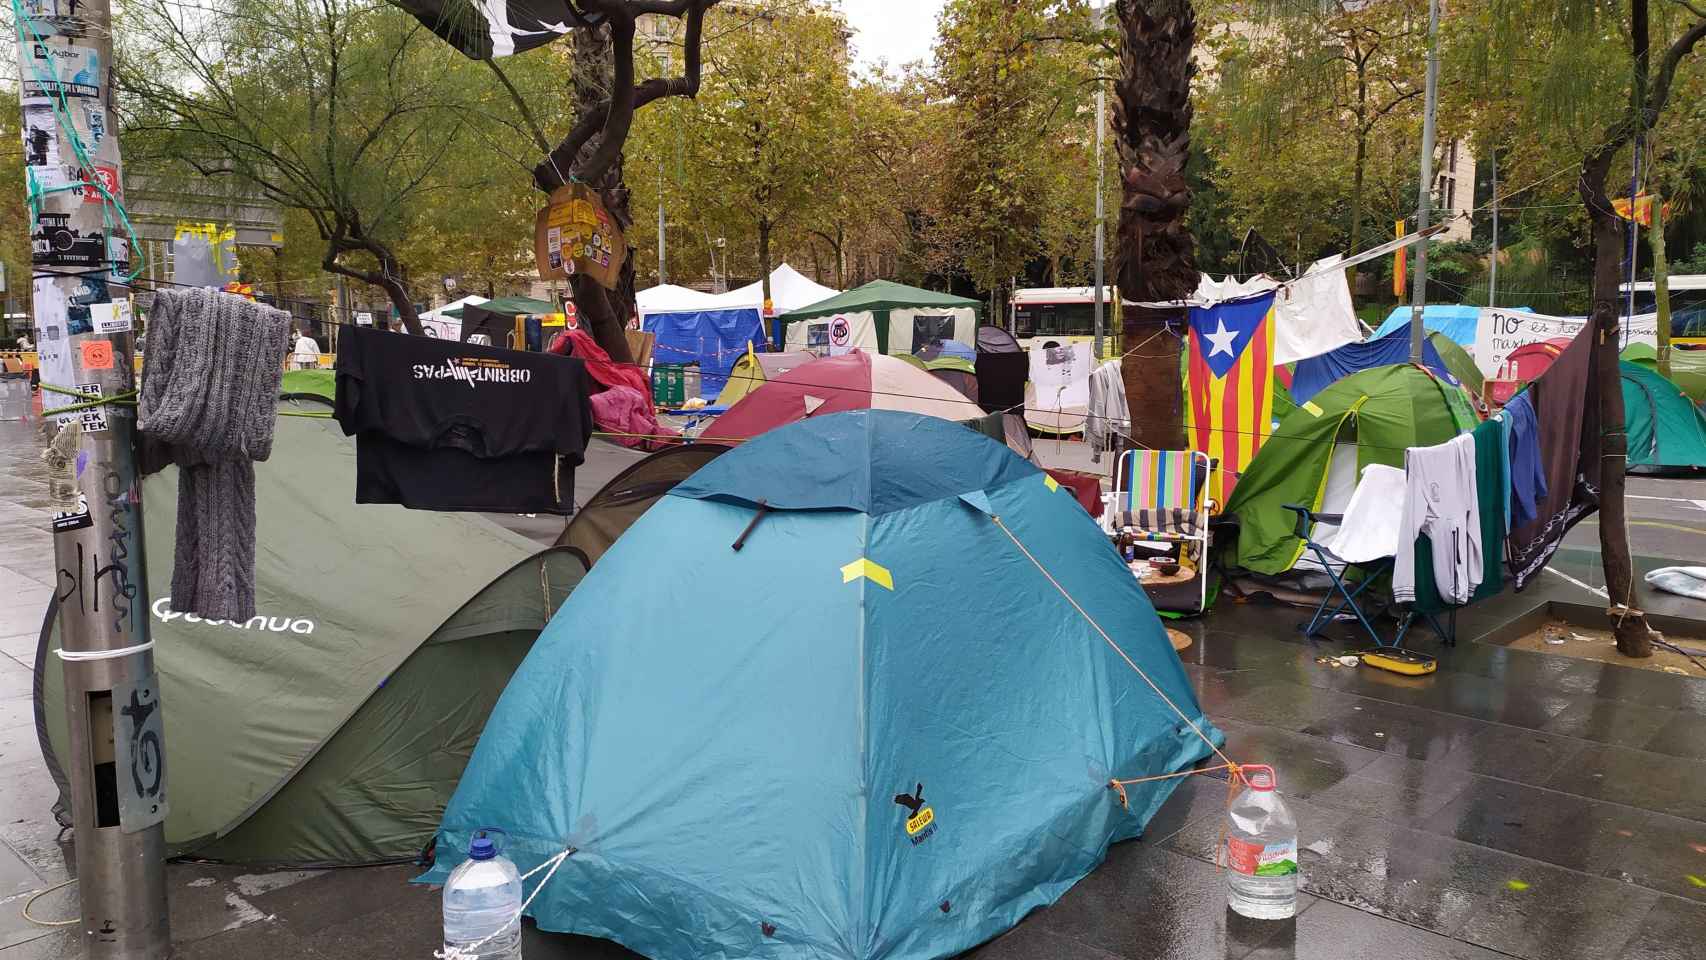 La acampada 'indepe' de la plaza Universitat de Barcelona, donde se ha producido una detención, dura ya 18 días / EP